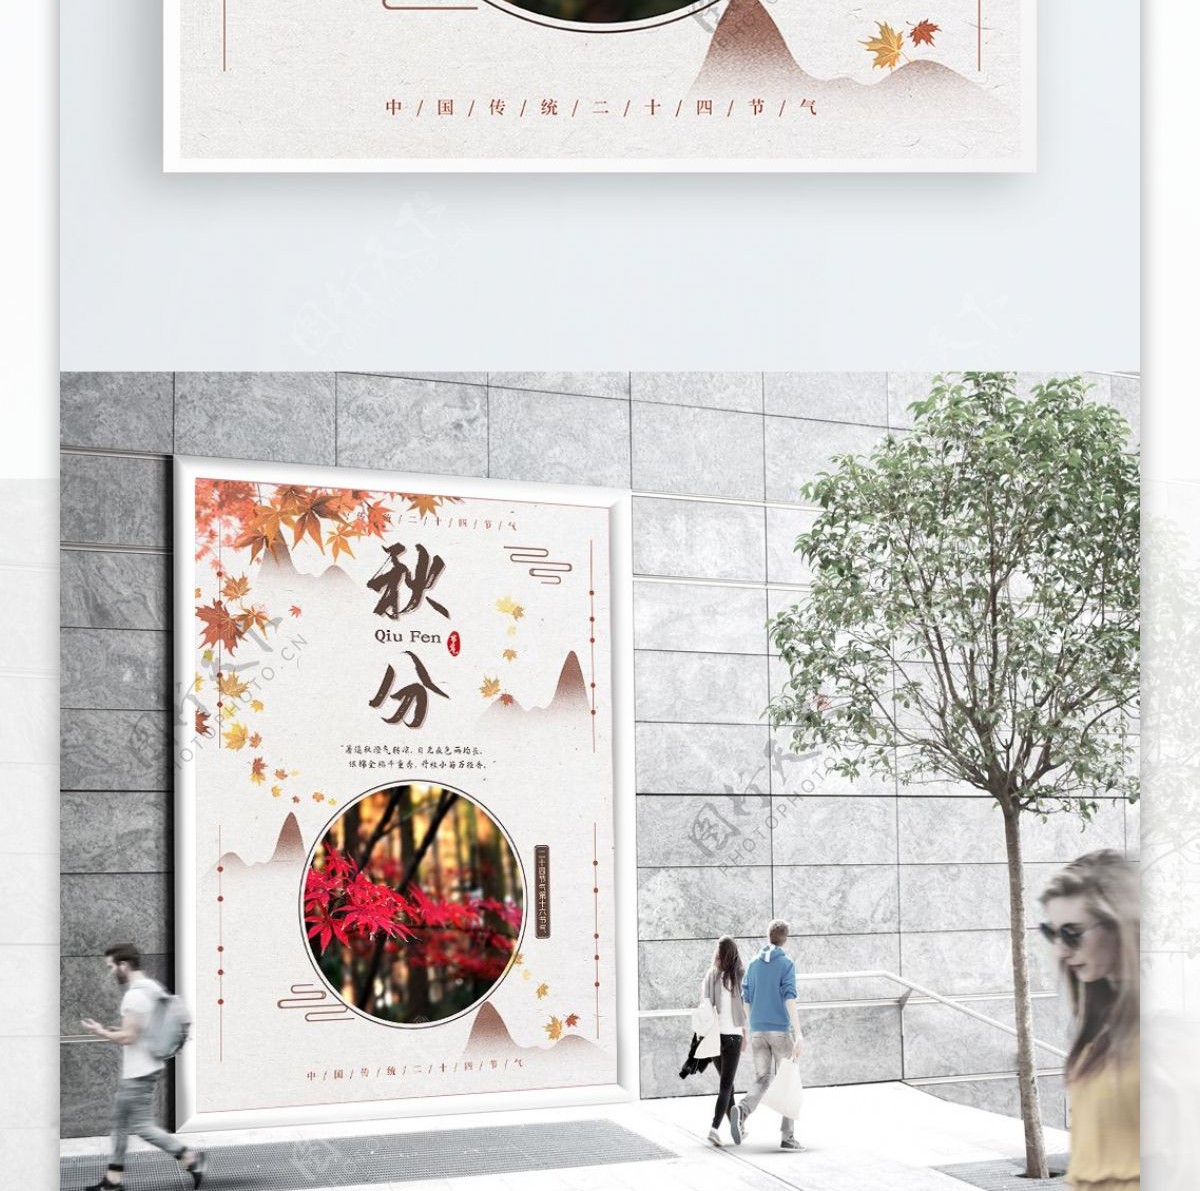 清新古风中国风传统二十四节气秋天秋分海报